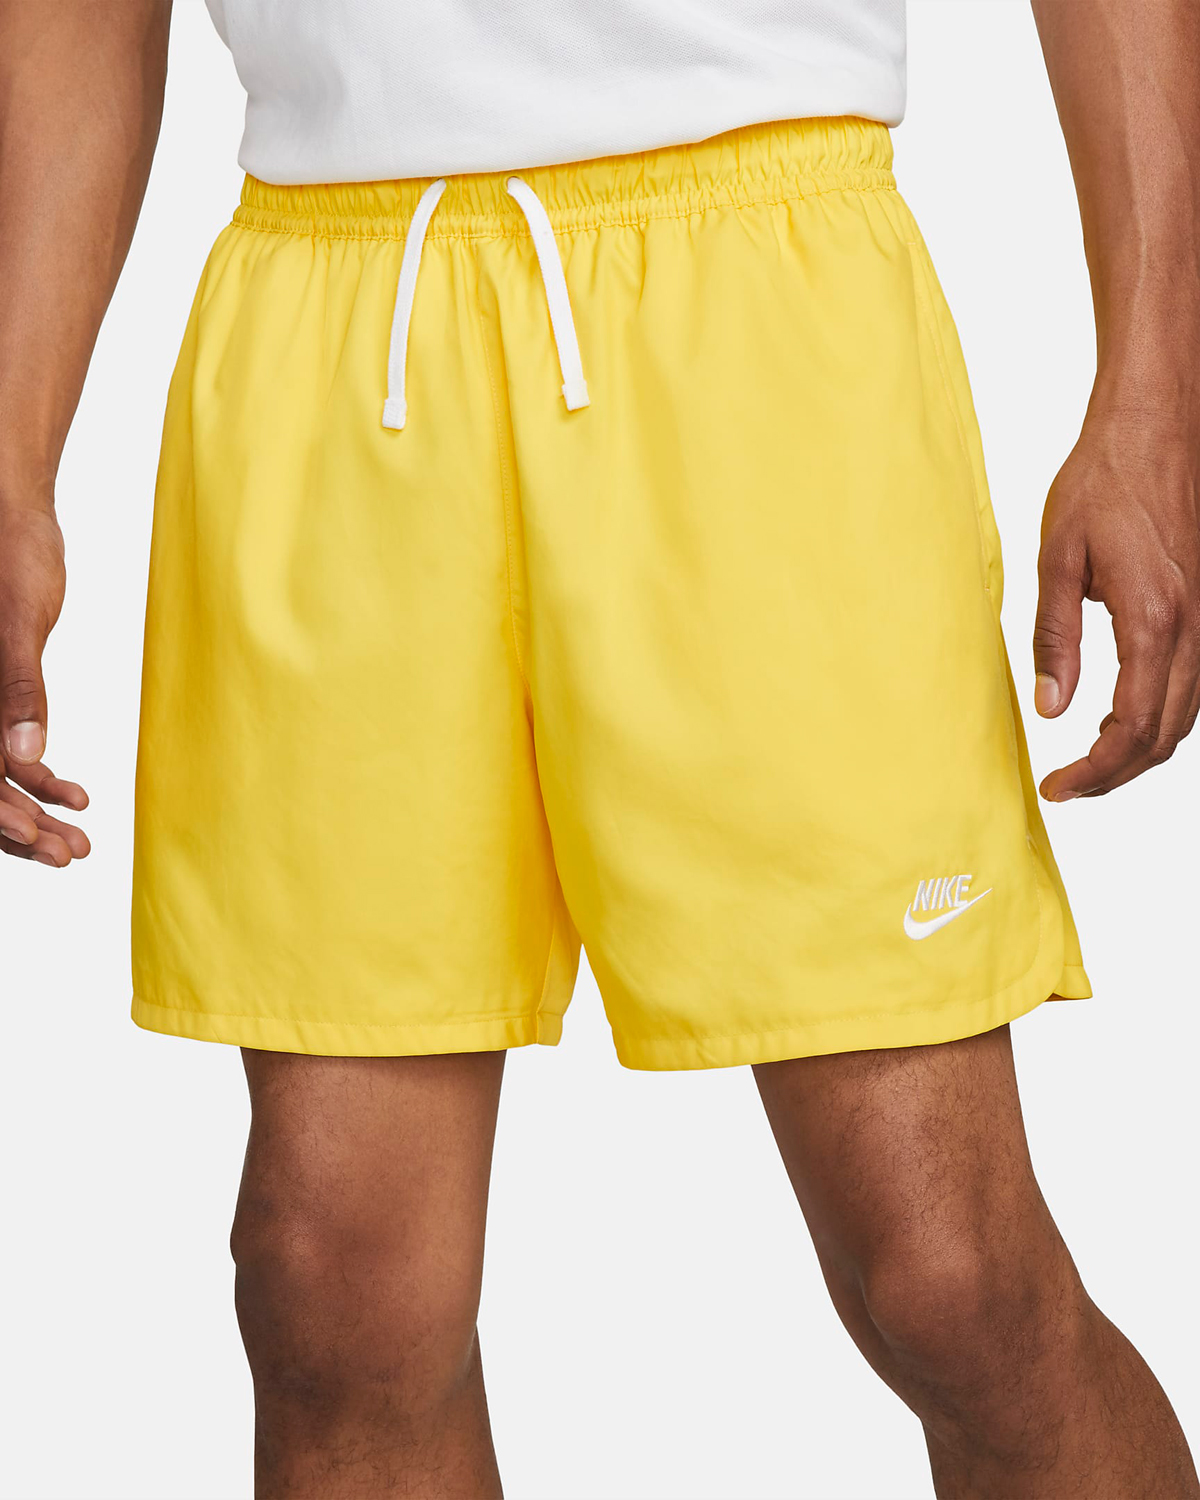 Nike-Woven-Flow-Shorts-Yellow-Strike